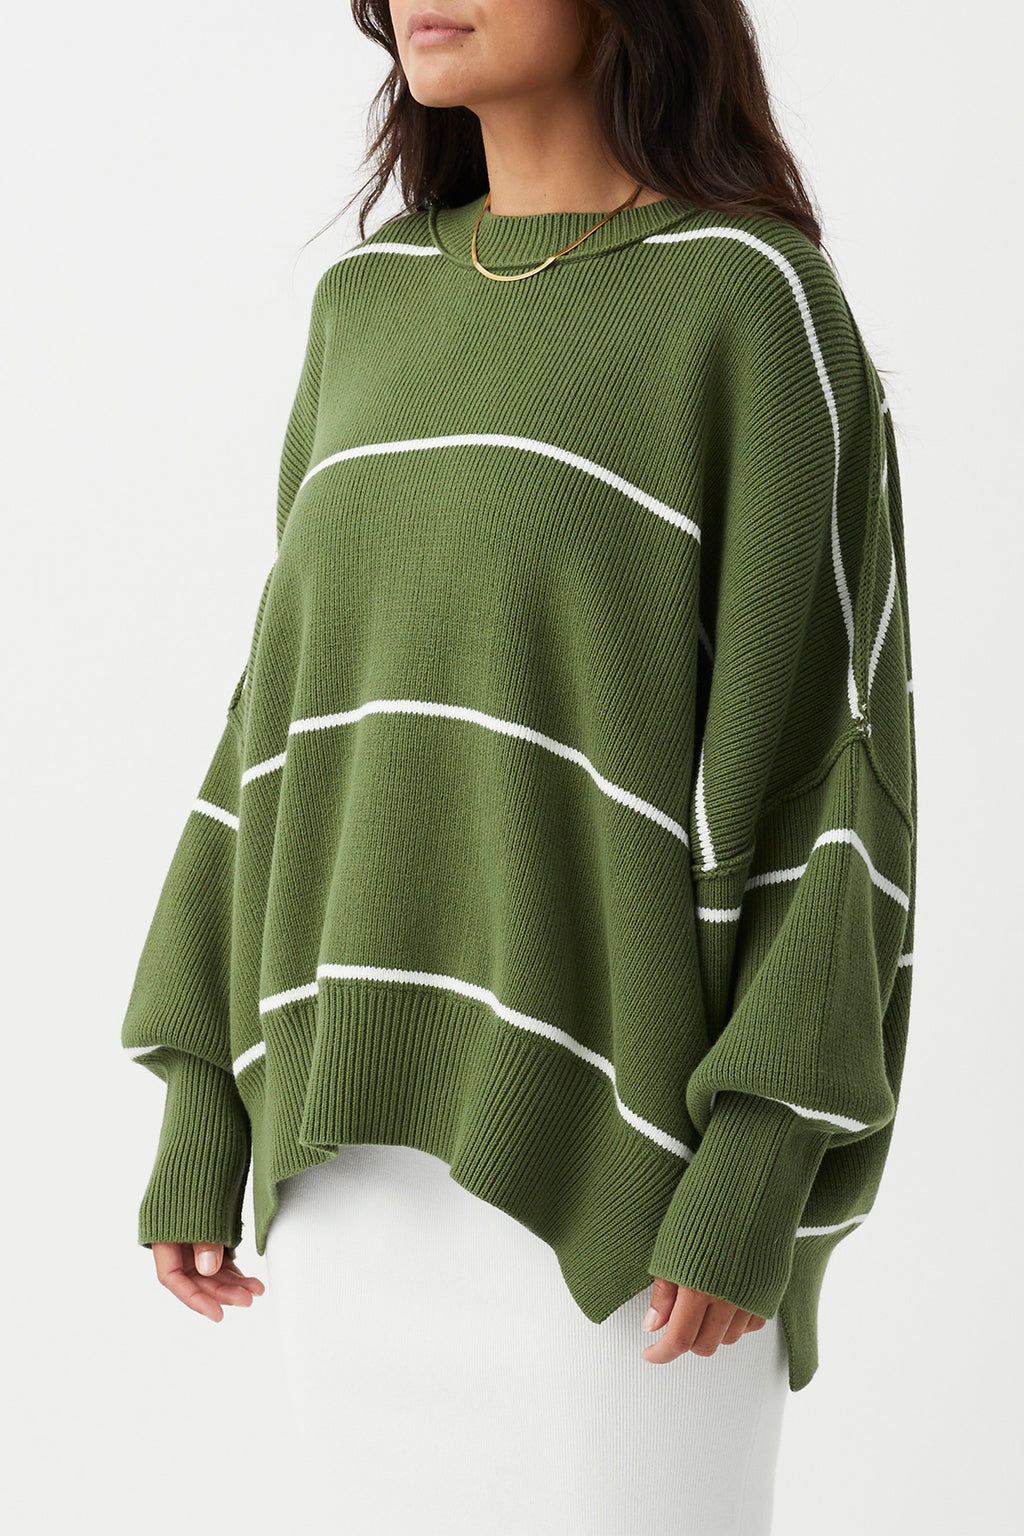 Harper Stripe Sweater - Caper & Cream